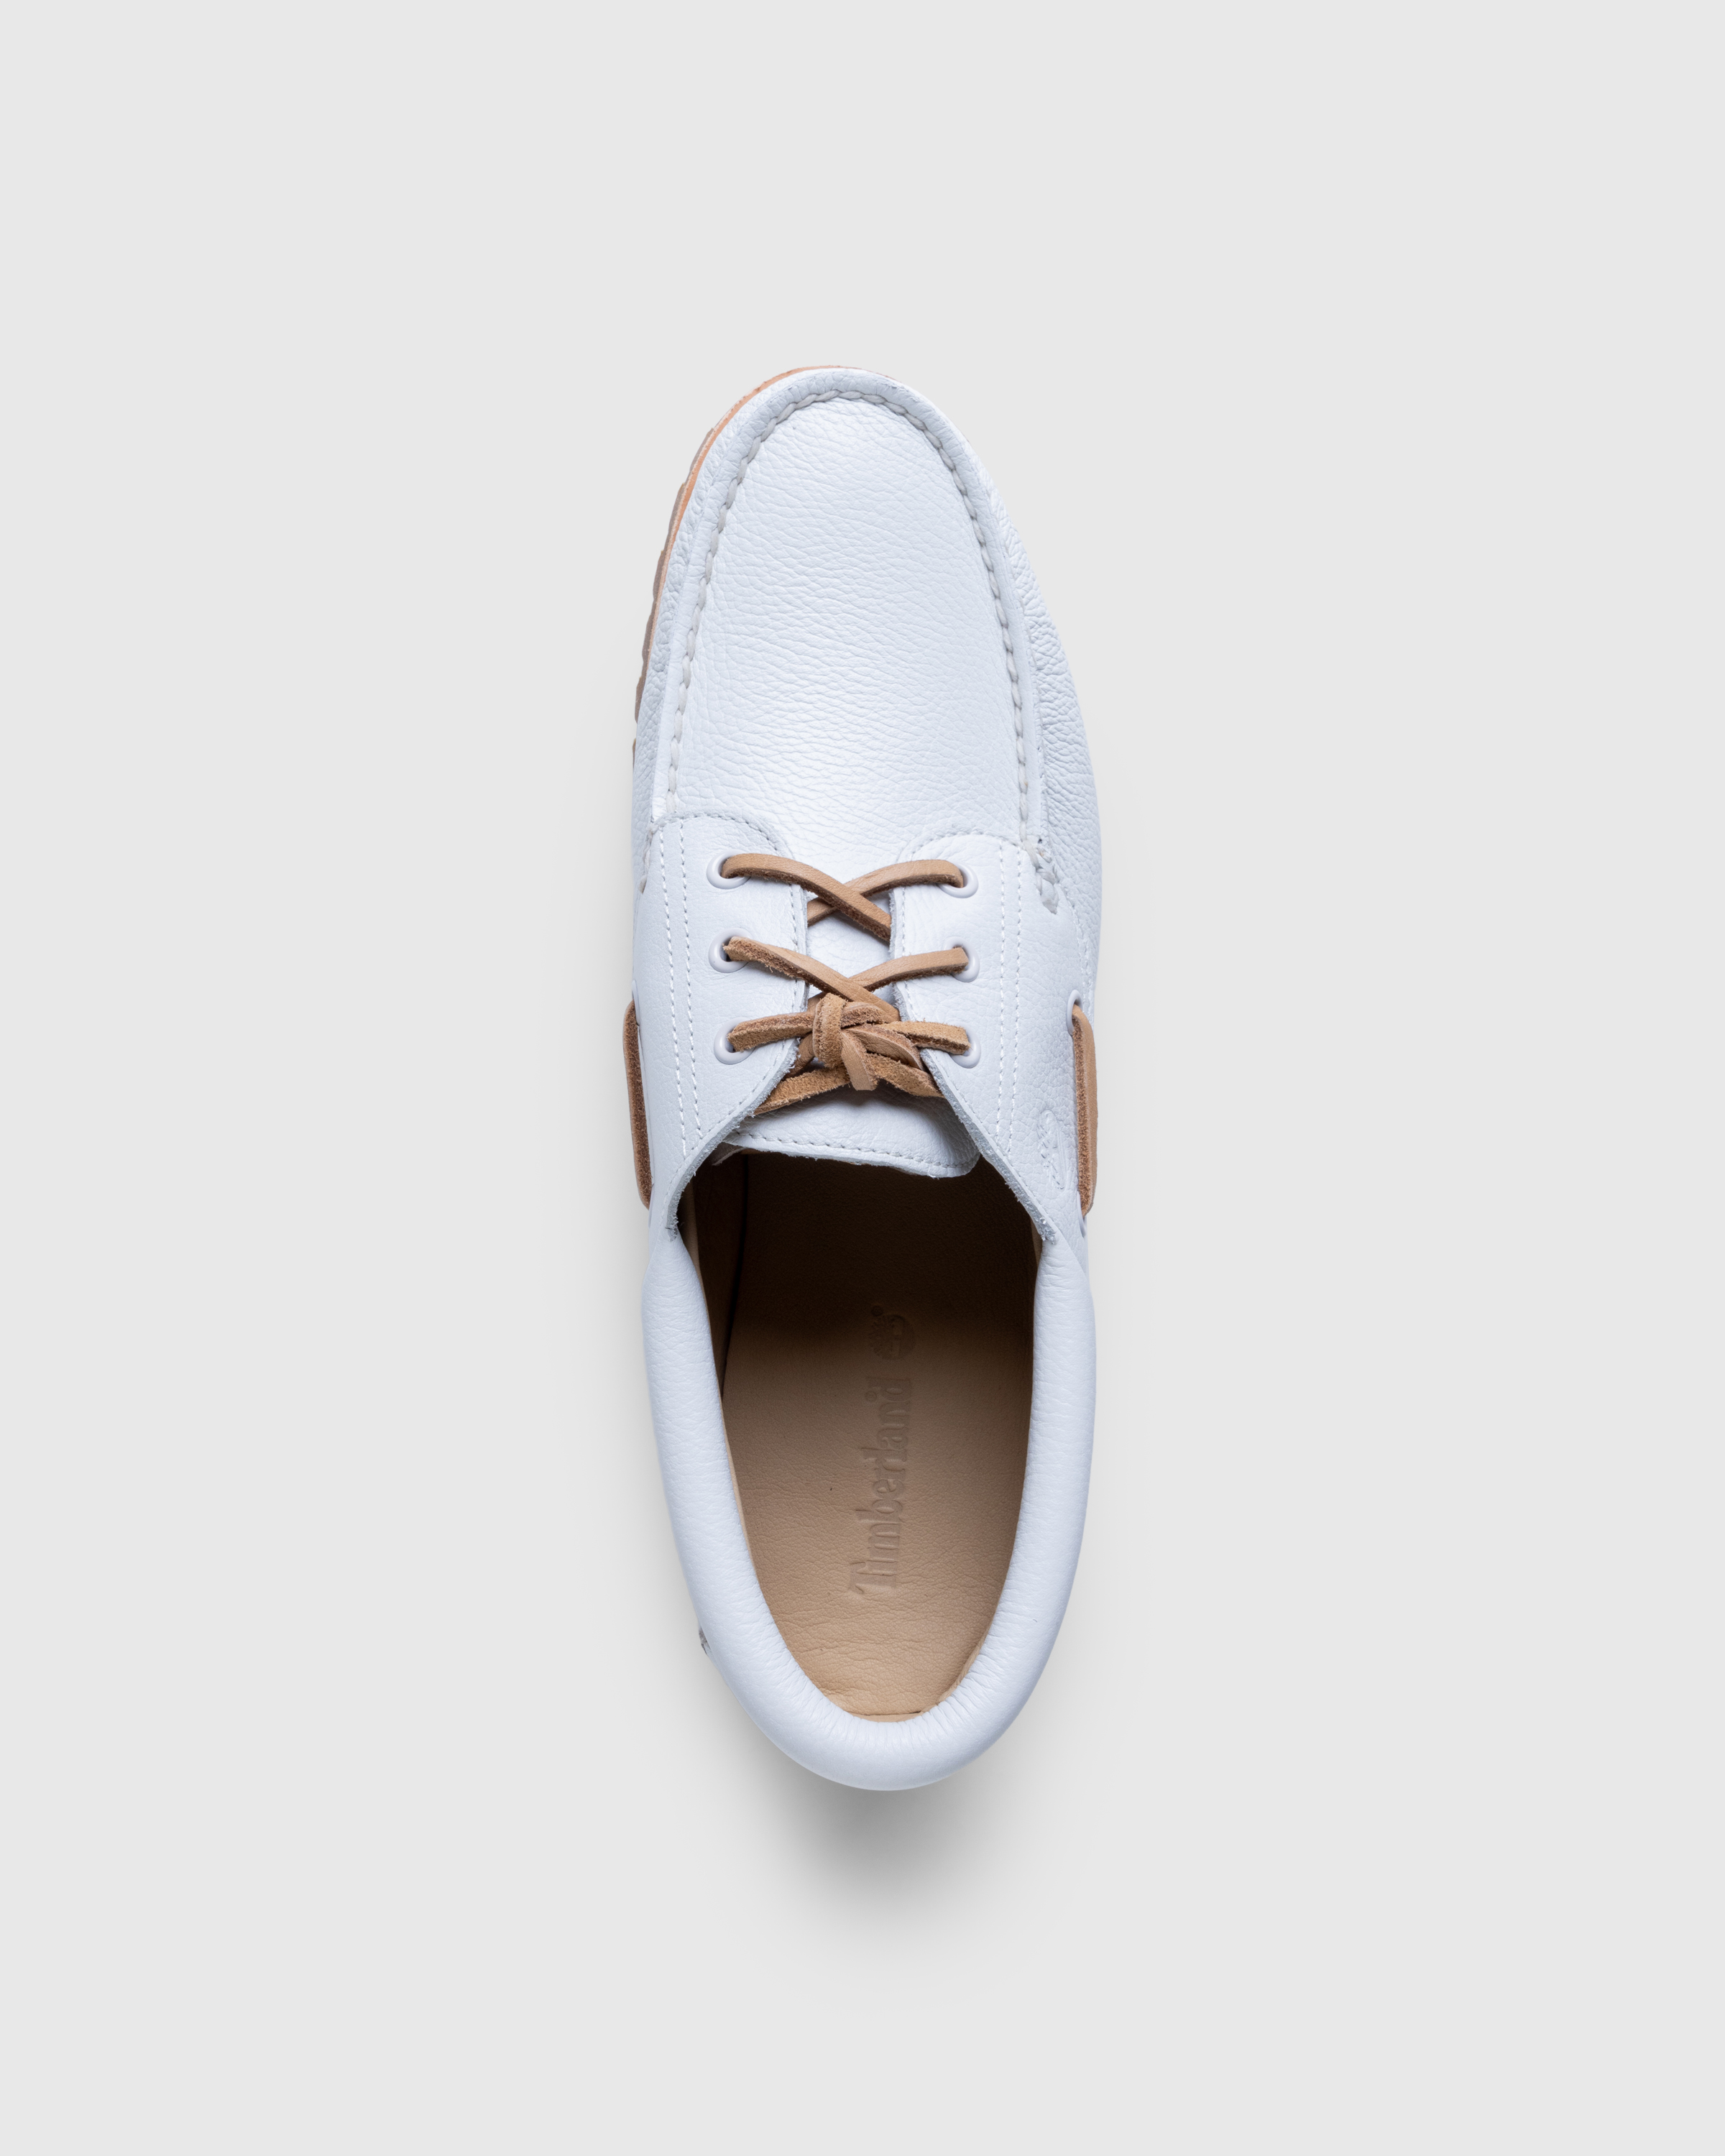 Timberland – 3-Eye Lug Boat Shoe White - Shoes - White - Image 5